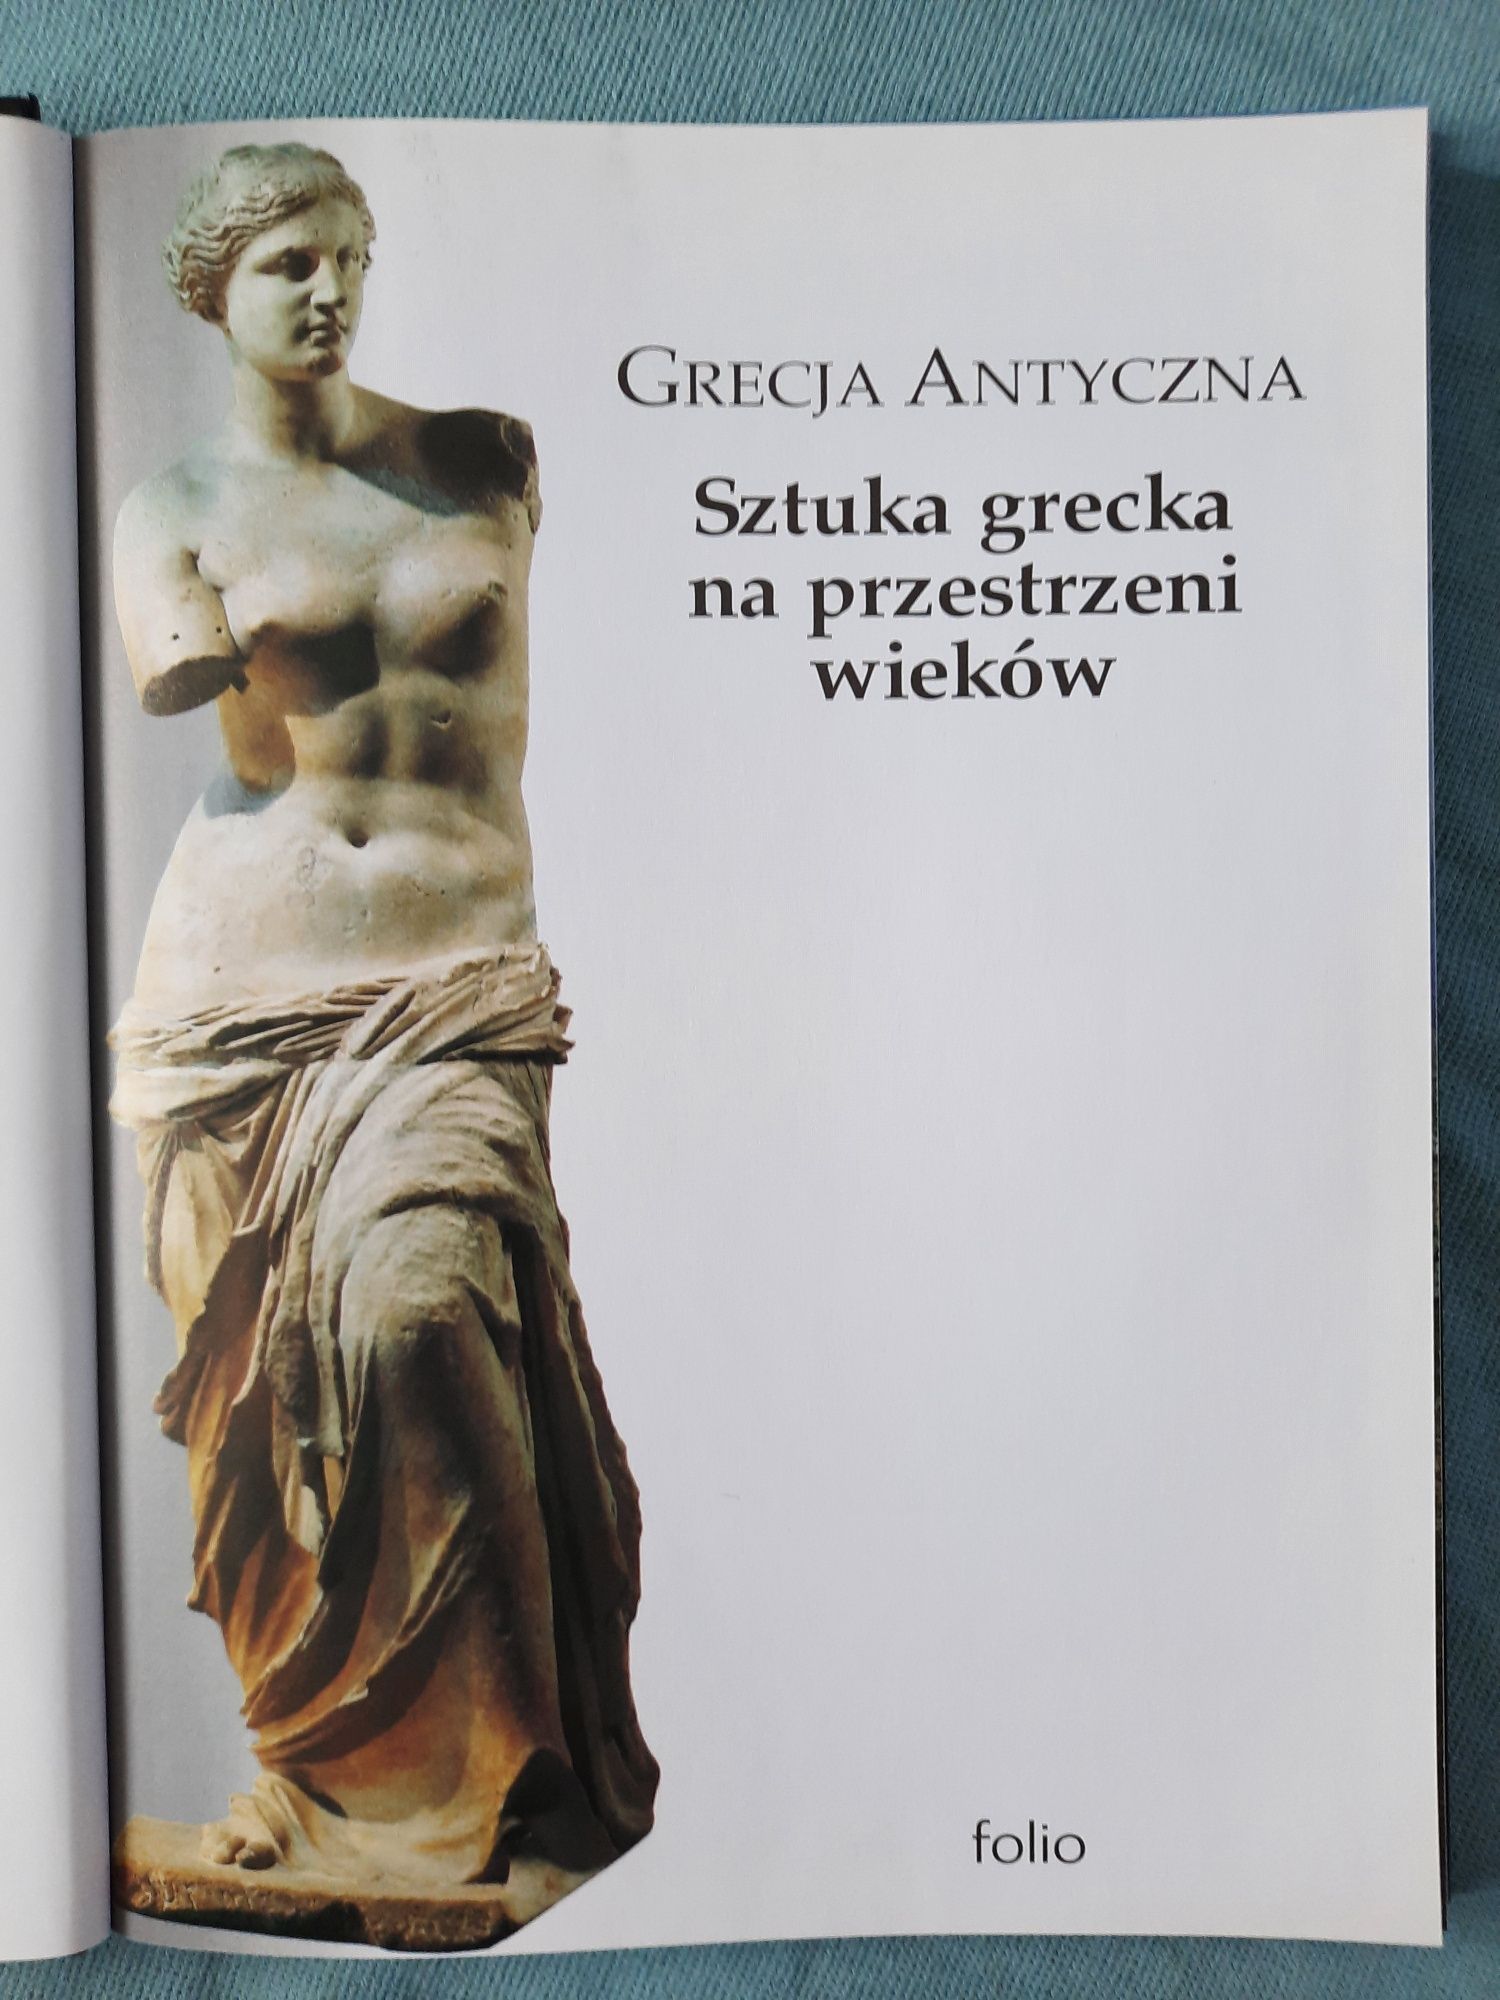 Grecja Antyczna, 2 tomy, seria Wielkie cywilizacje